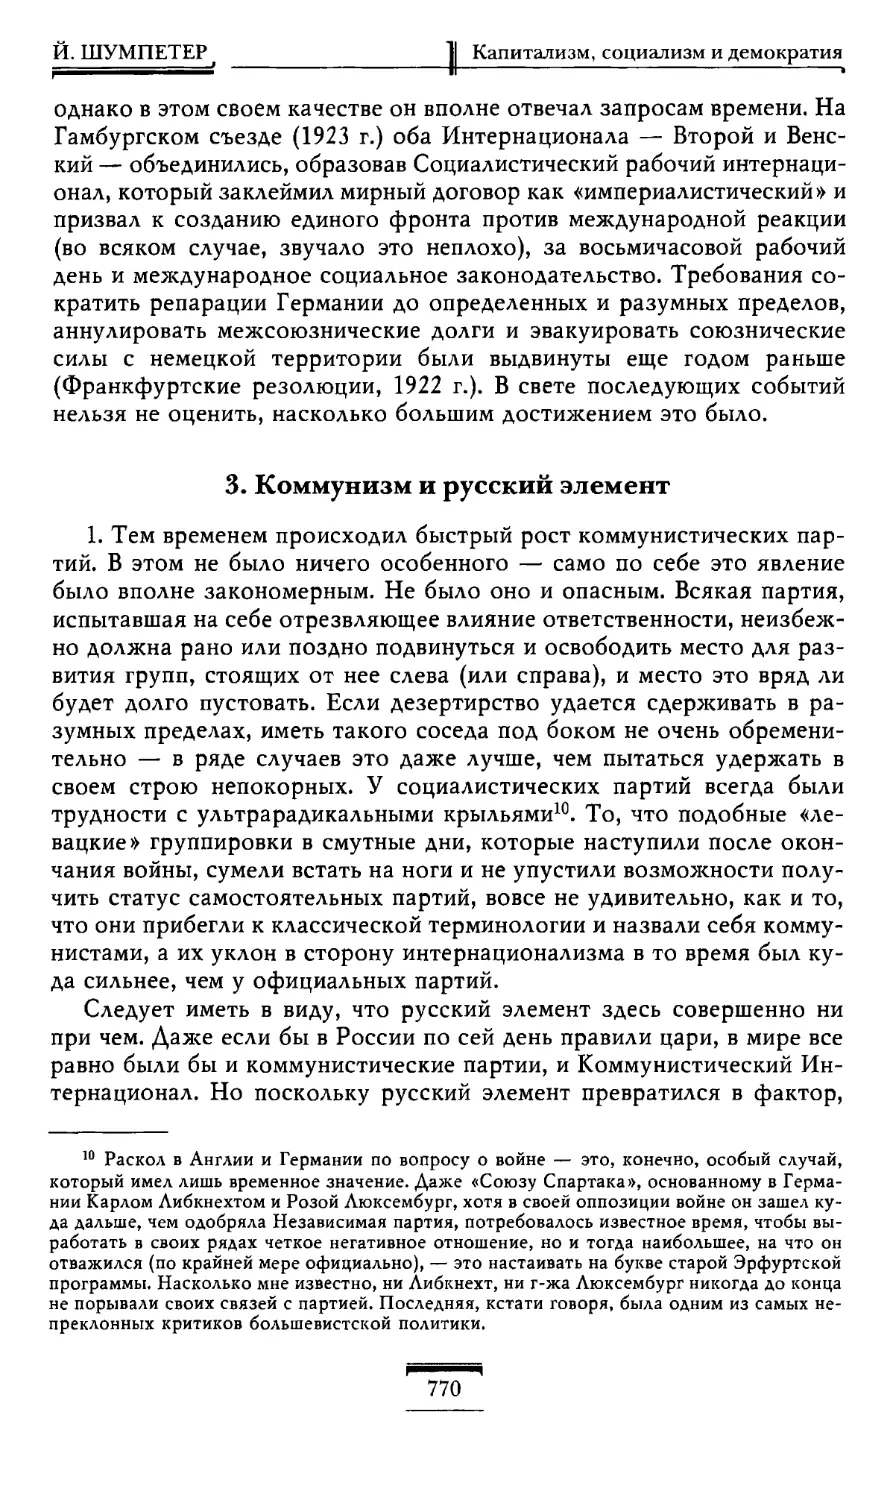 3. Коммунизм и русский элемент